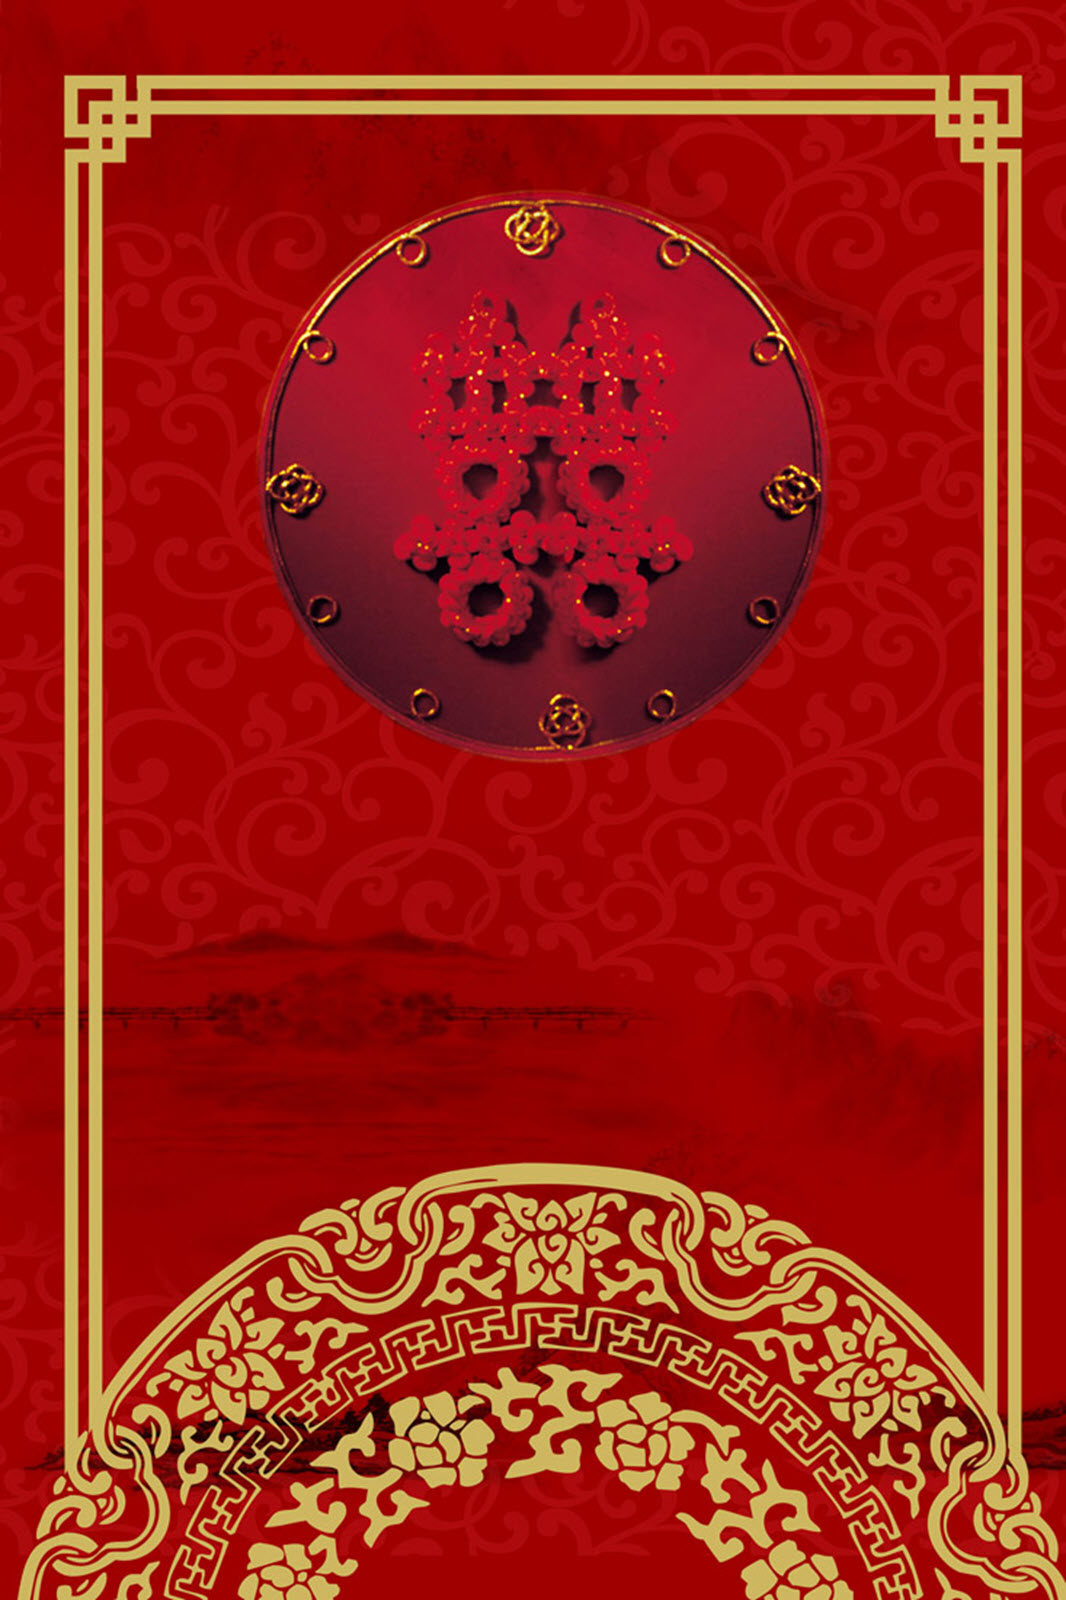 Ốp lưng Chữ hỷ may mắn Hoa mai mùa xuân nền đỏ Độc đáo Iphone từ 5 đến Xs  Max1111 Promax1212 Promax CHUFLO21098  Shopee Việt Nam